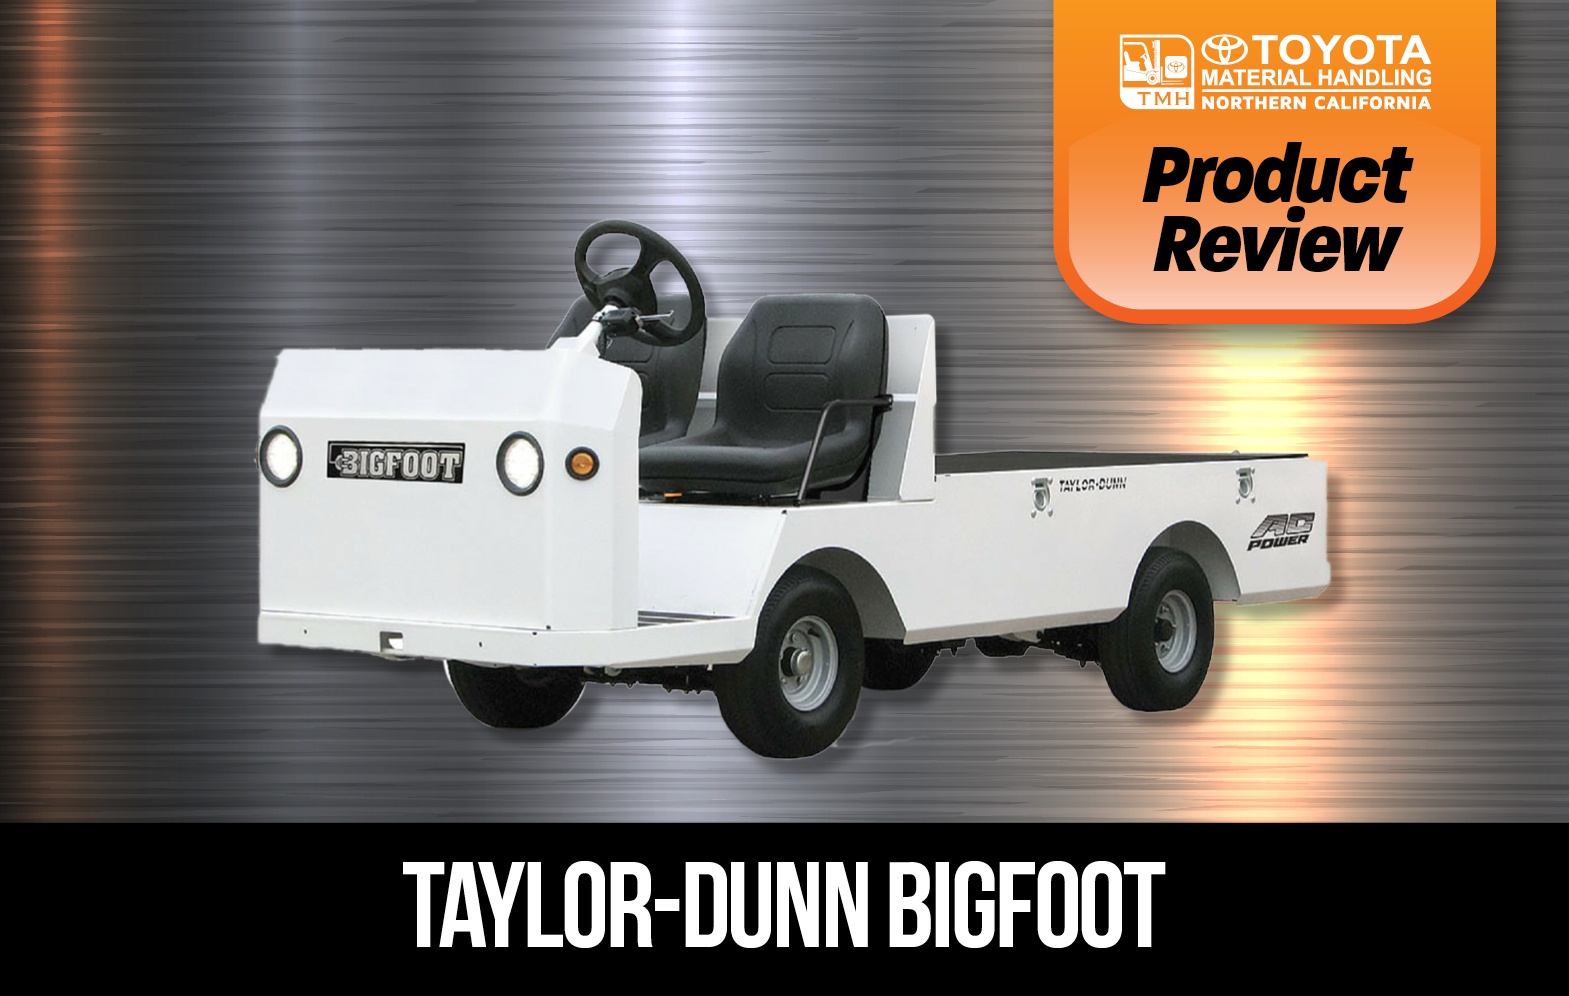 Review: Taylor-dunn Bigfoot Electric Cart